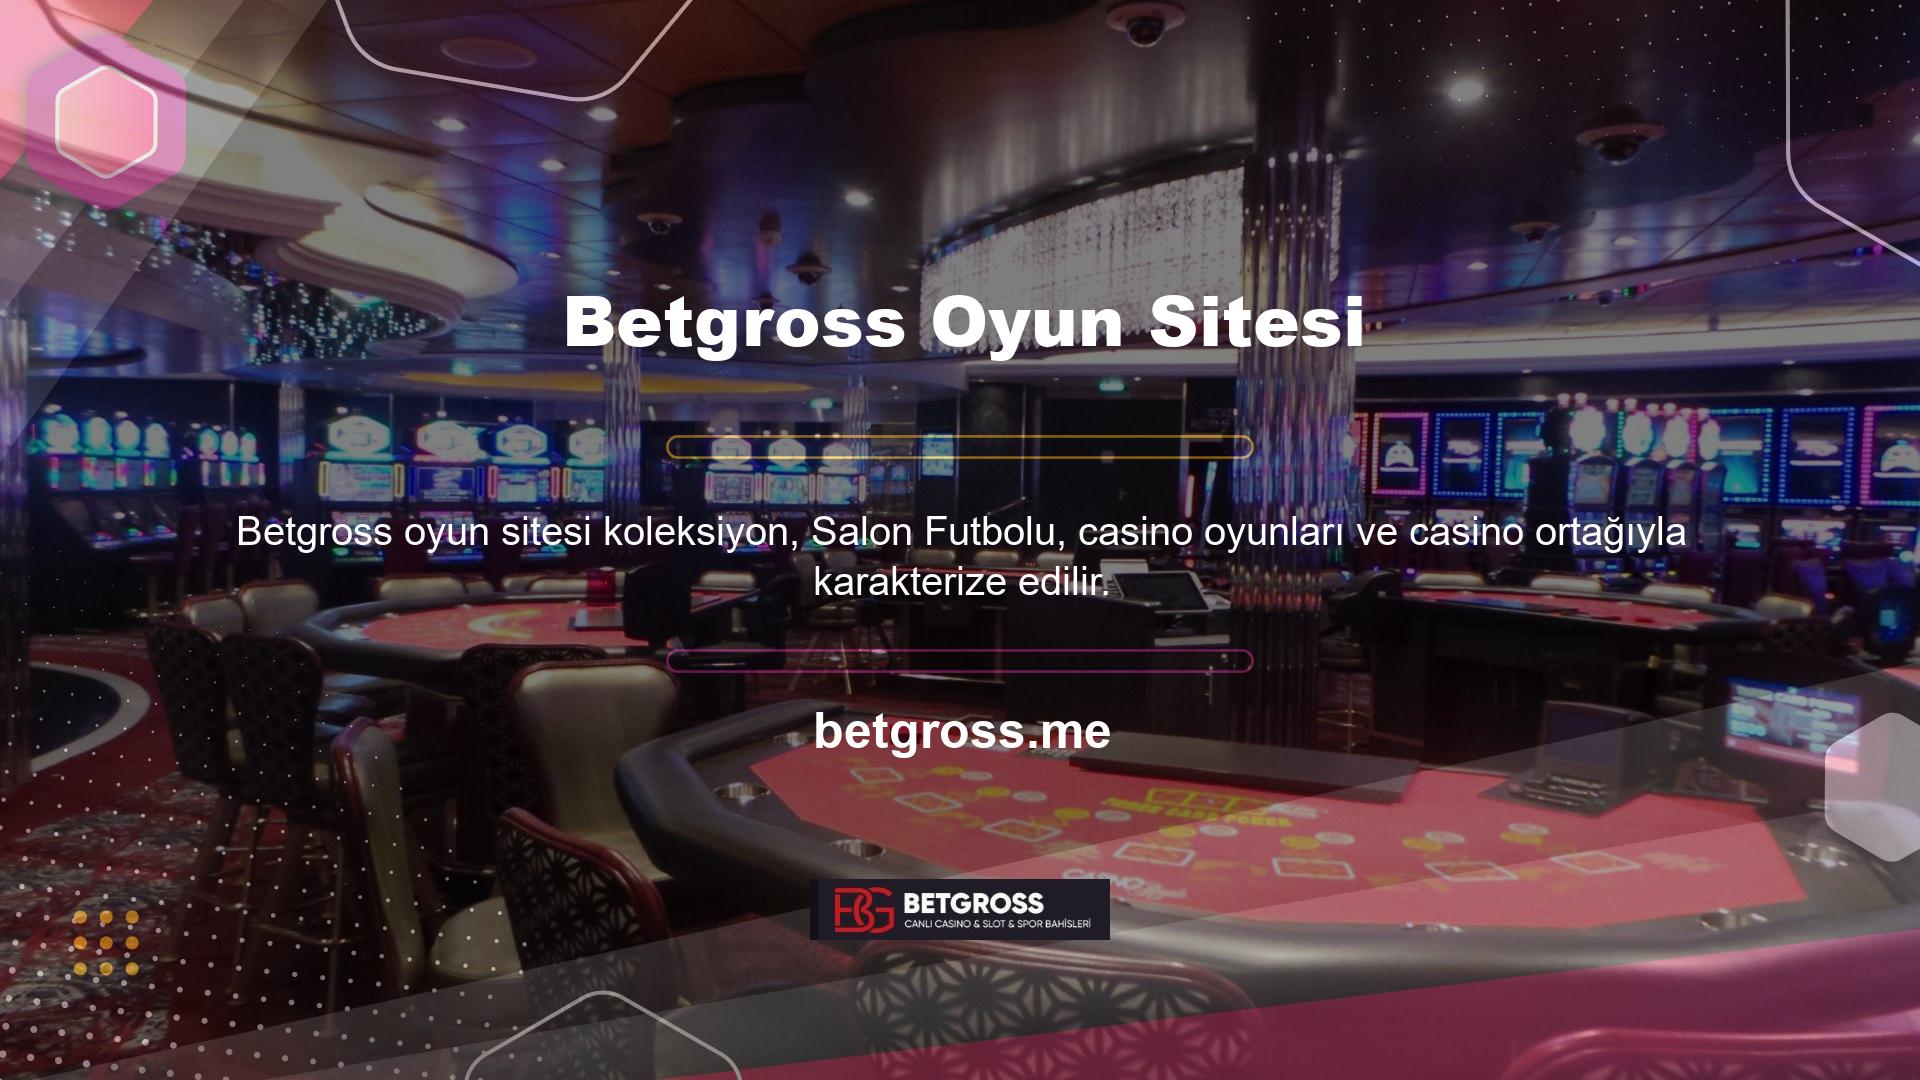 Betgross yalnızca çok sayıda profesyonel oyun operatörüyle sözleşmesi olan ve sistemleri doğrulanmış profesyonel casino oyunu sağlayıcılarıyla çalışır